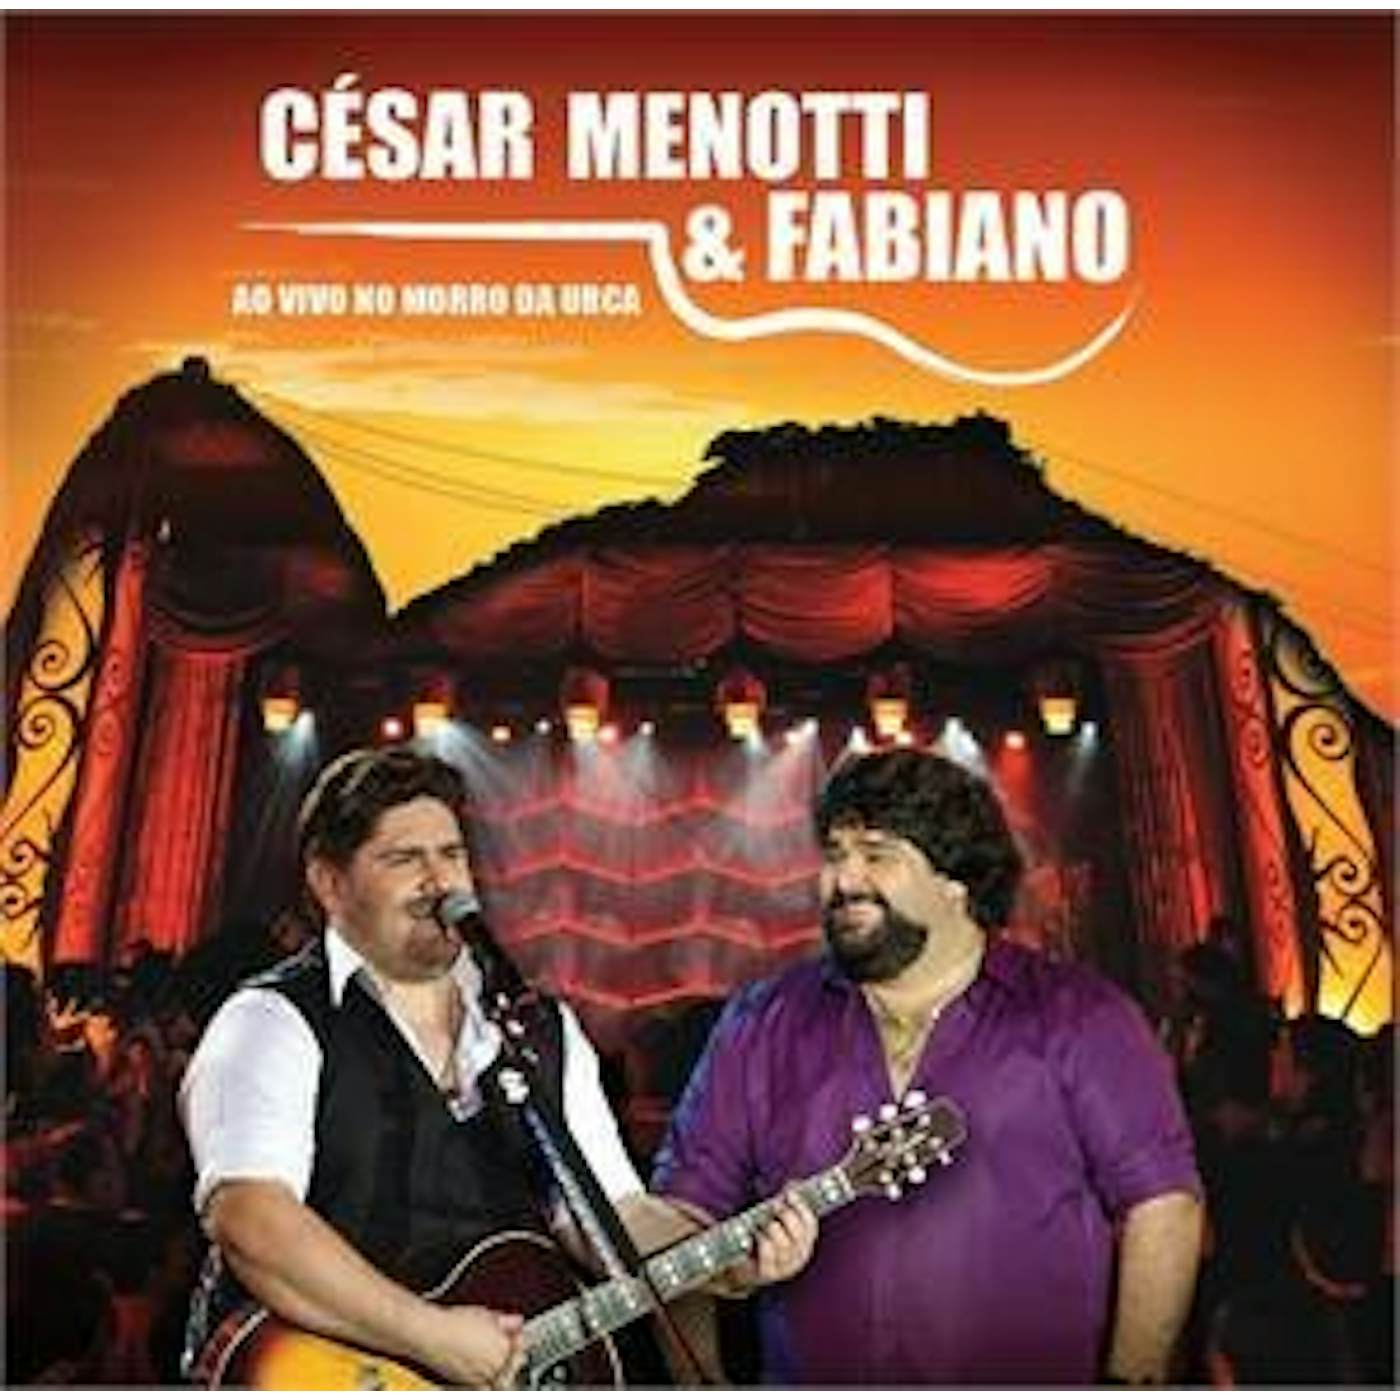 César Menotti & Fabiano MORRO DA URCA: AO VIVO CD